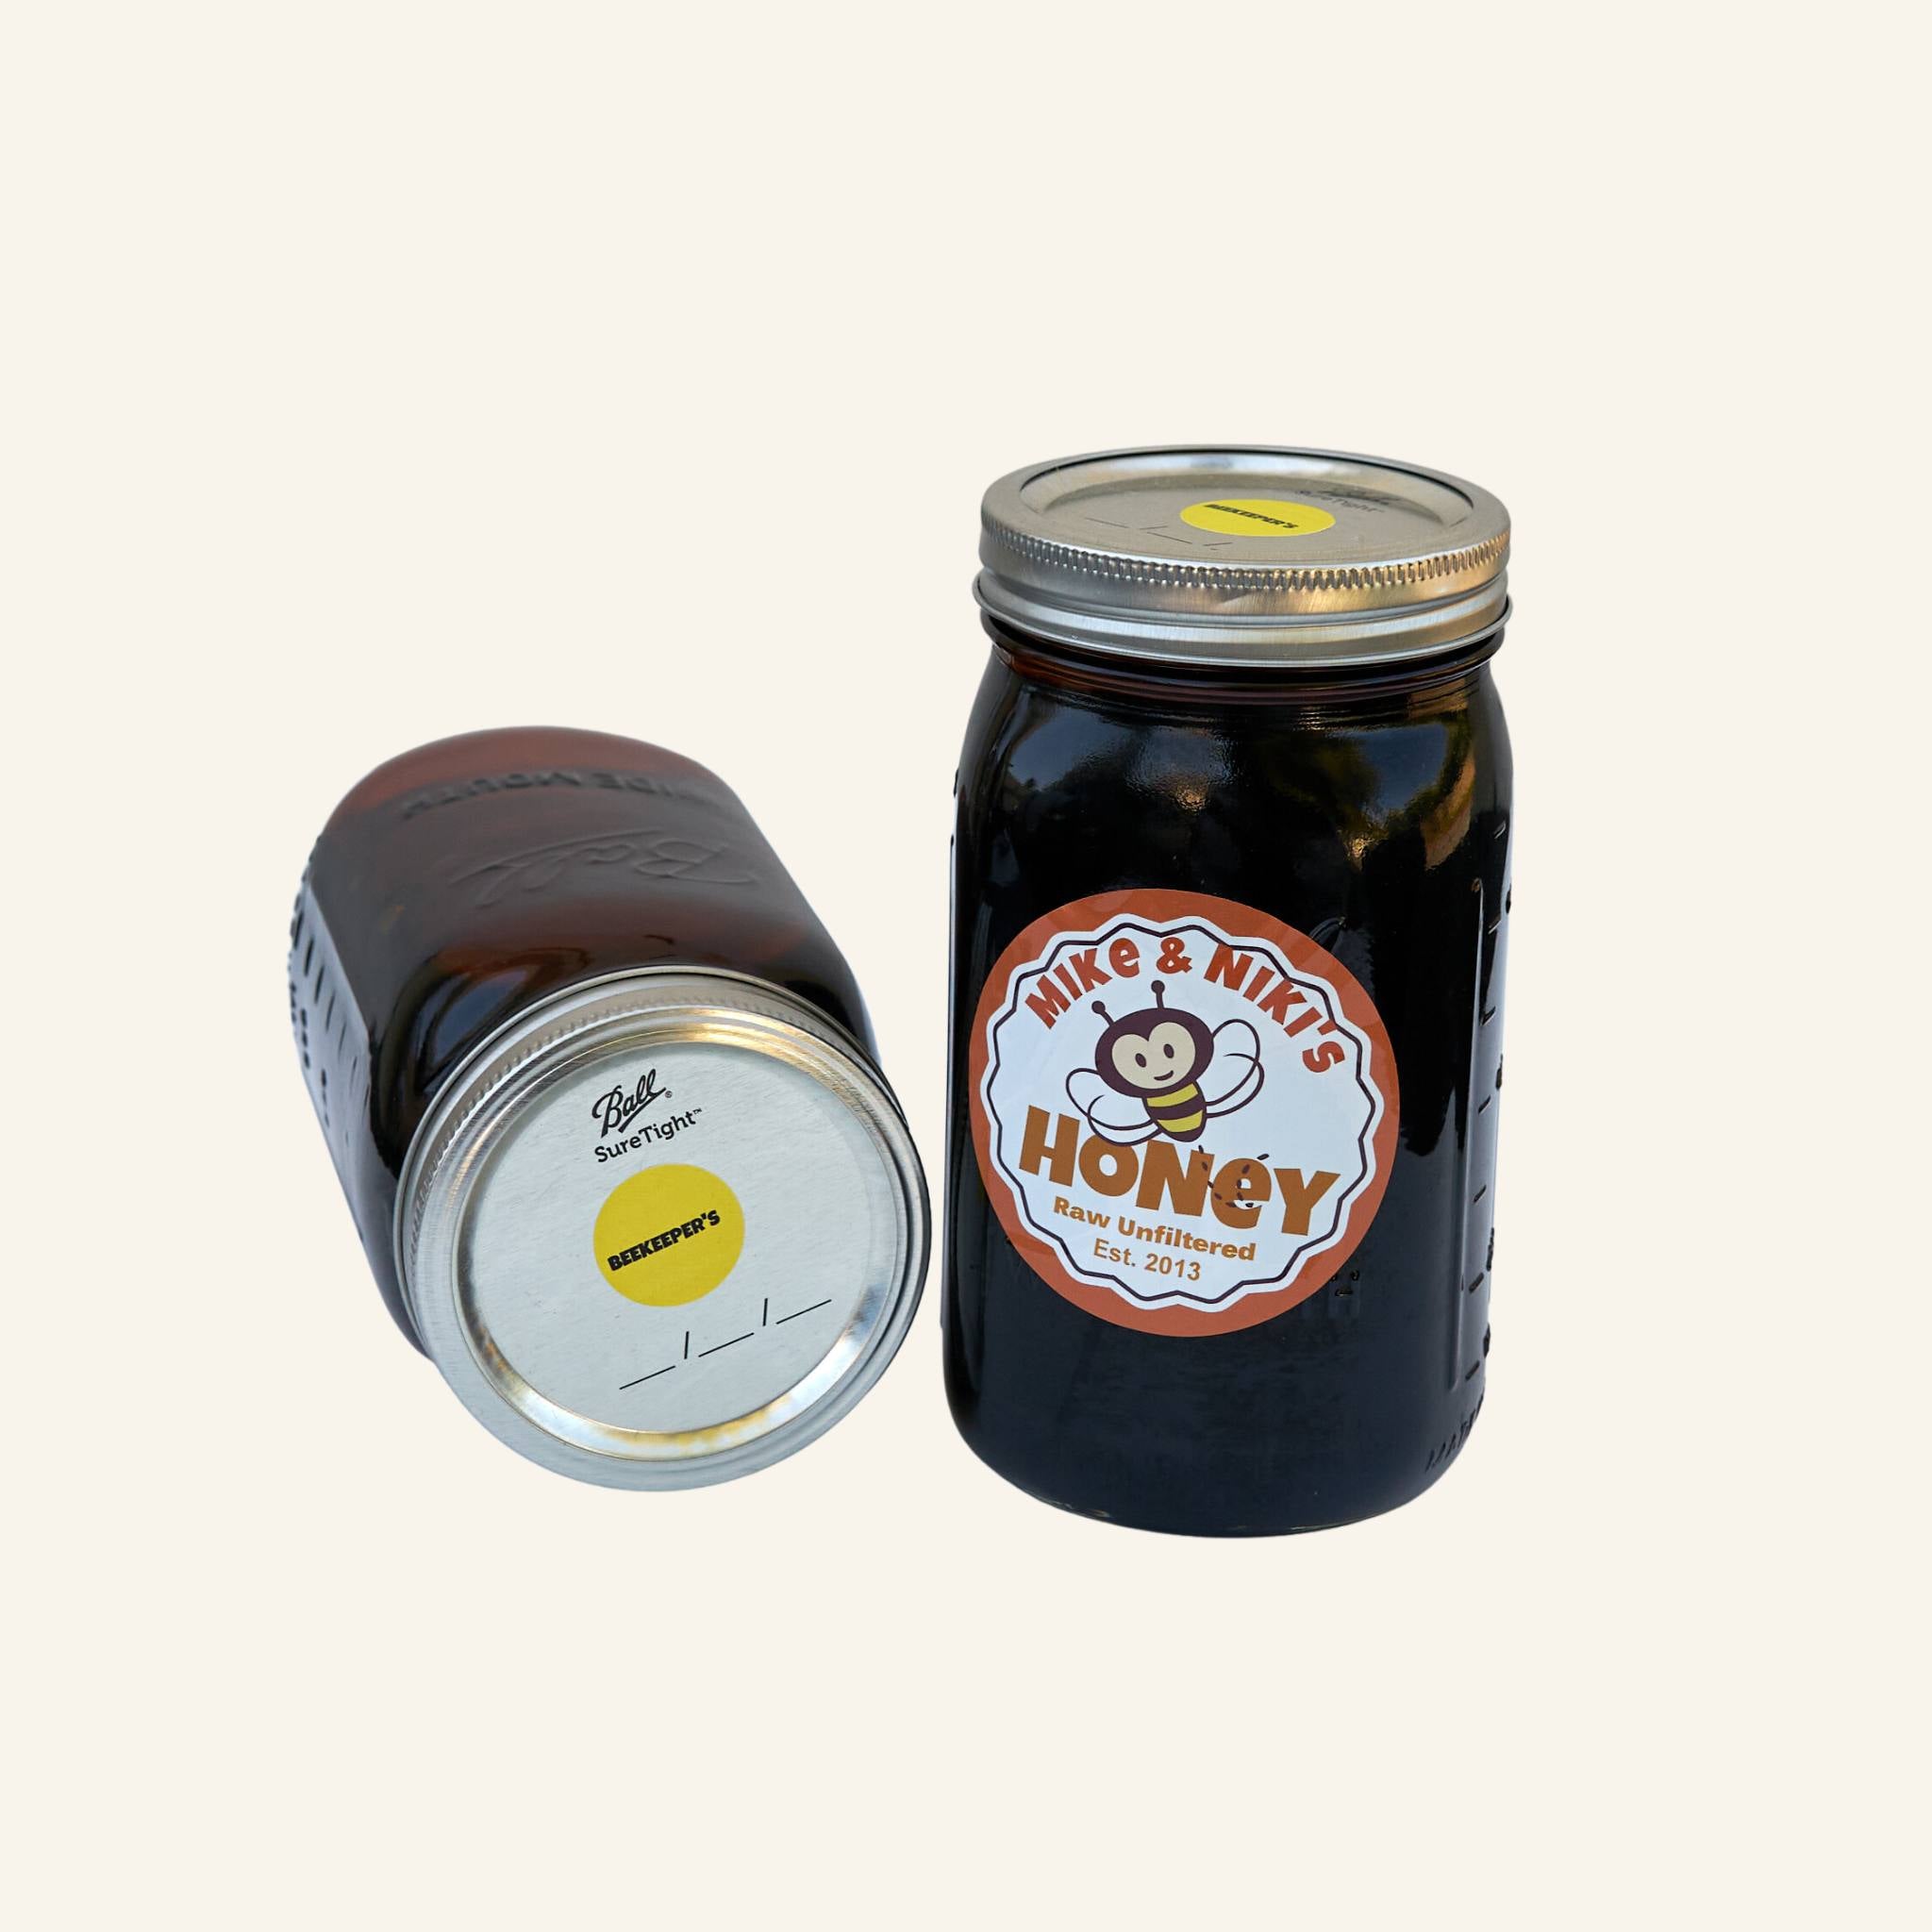 Beekeeper's Honey